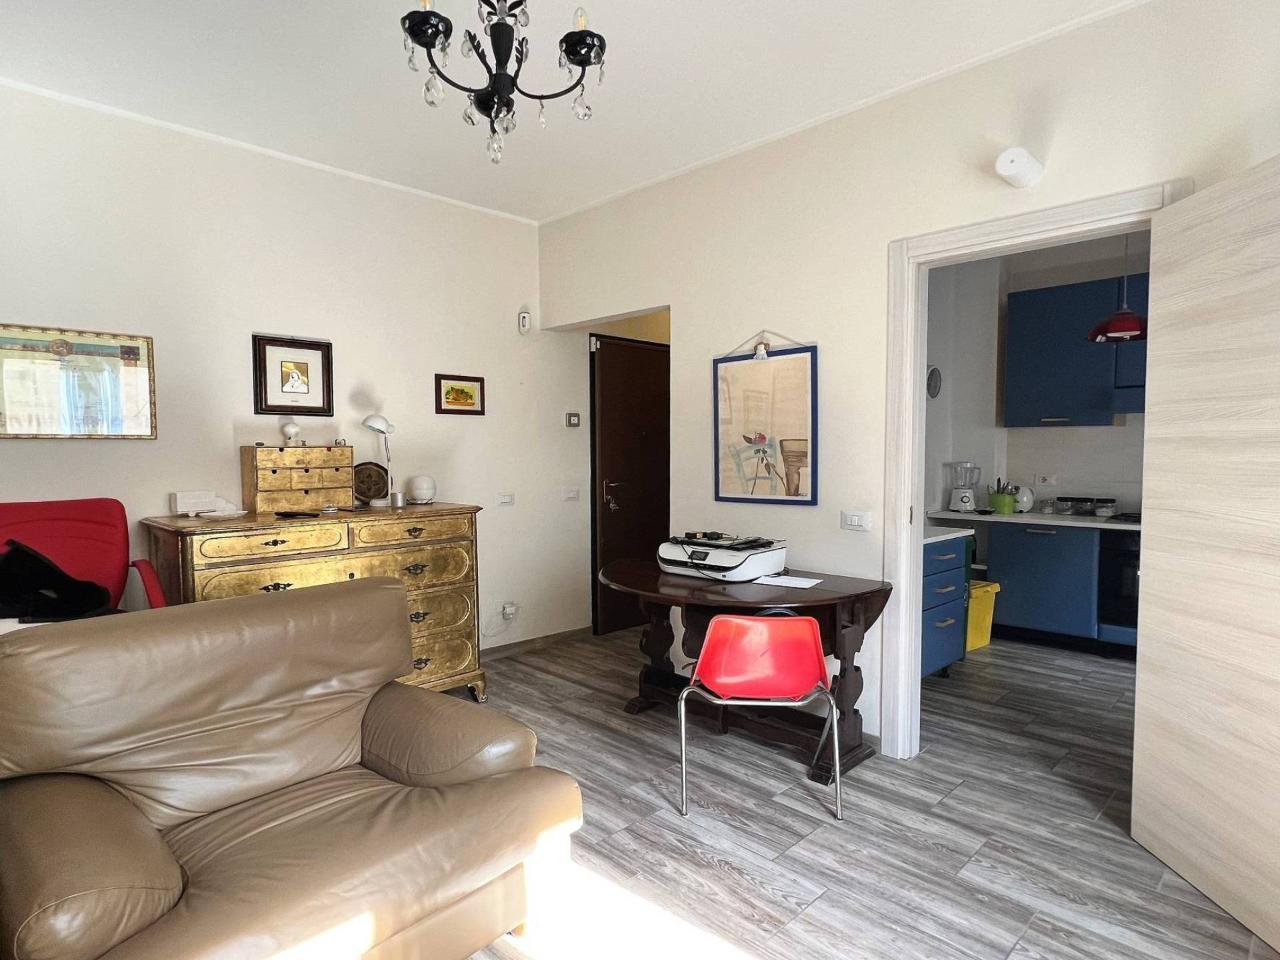 Appartamento in vendita a Casatenovo